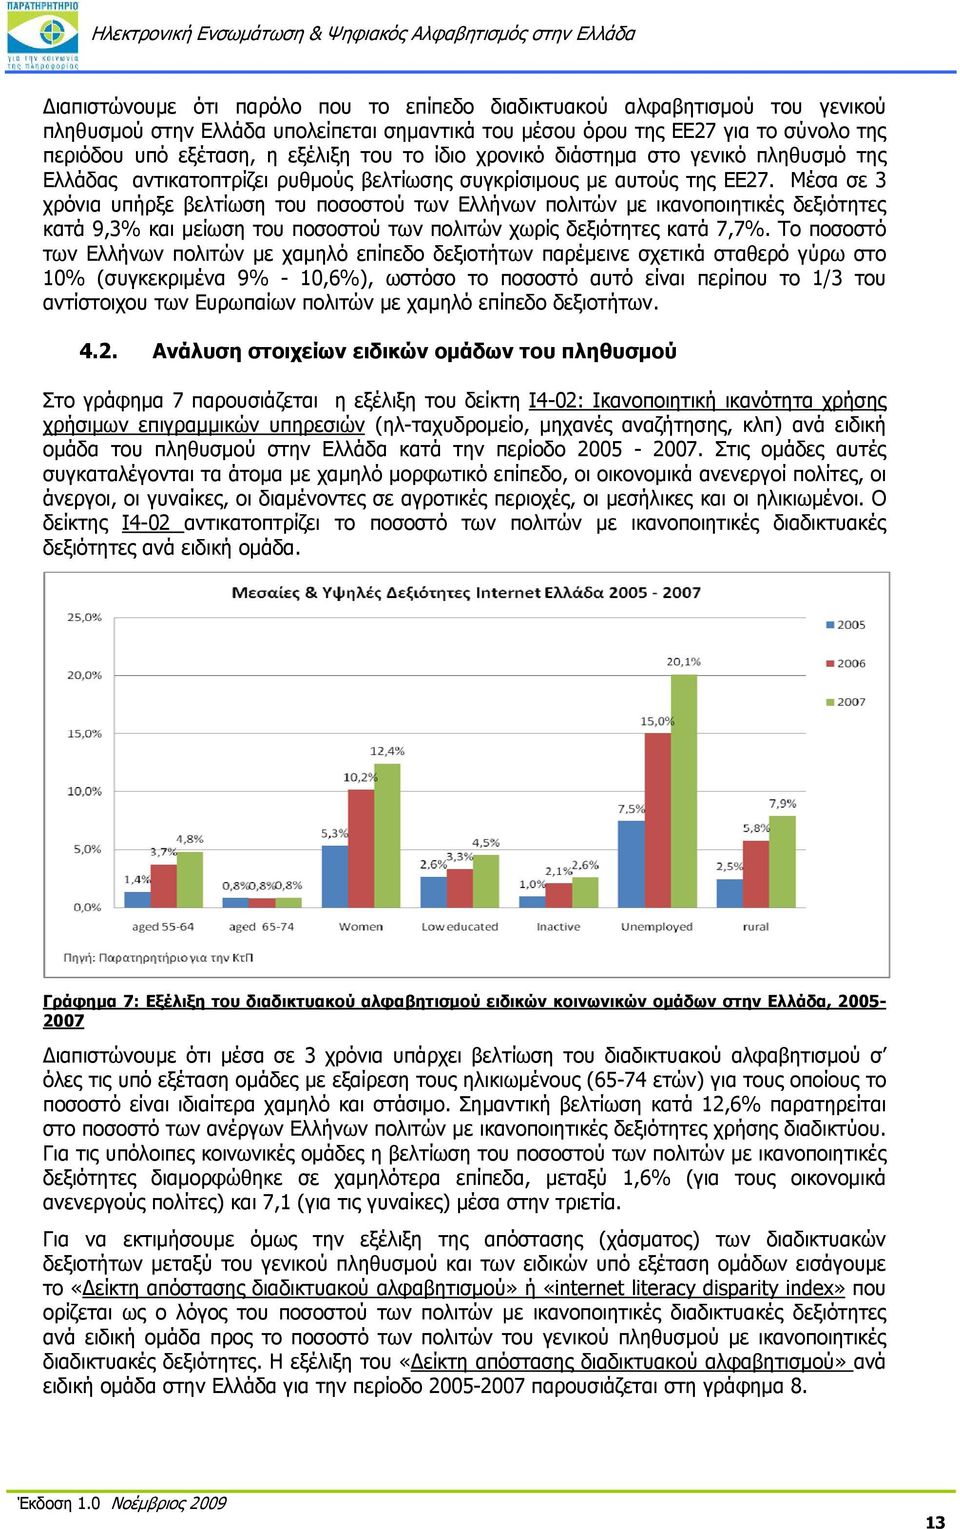 Μέσα σε 3 χρόνια υπήρξε βελτίωση του ποσοστού των Ελλήνων πολιτών με ικανοποιητικές δεξιότητες κατά 9,3% και μείωση του ποσοστού των πολιτών χωρίς δεξιότητες κατά 7,7%.